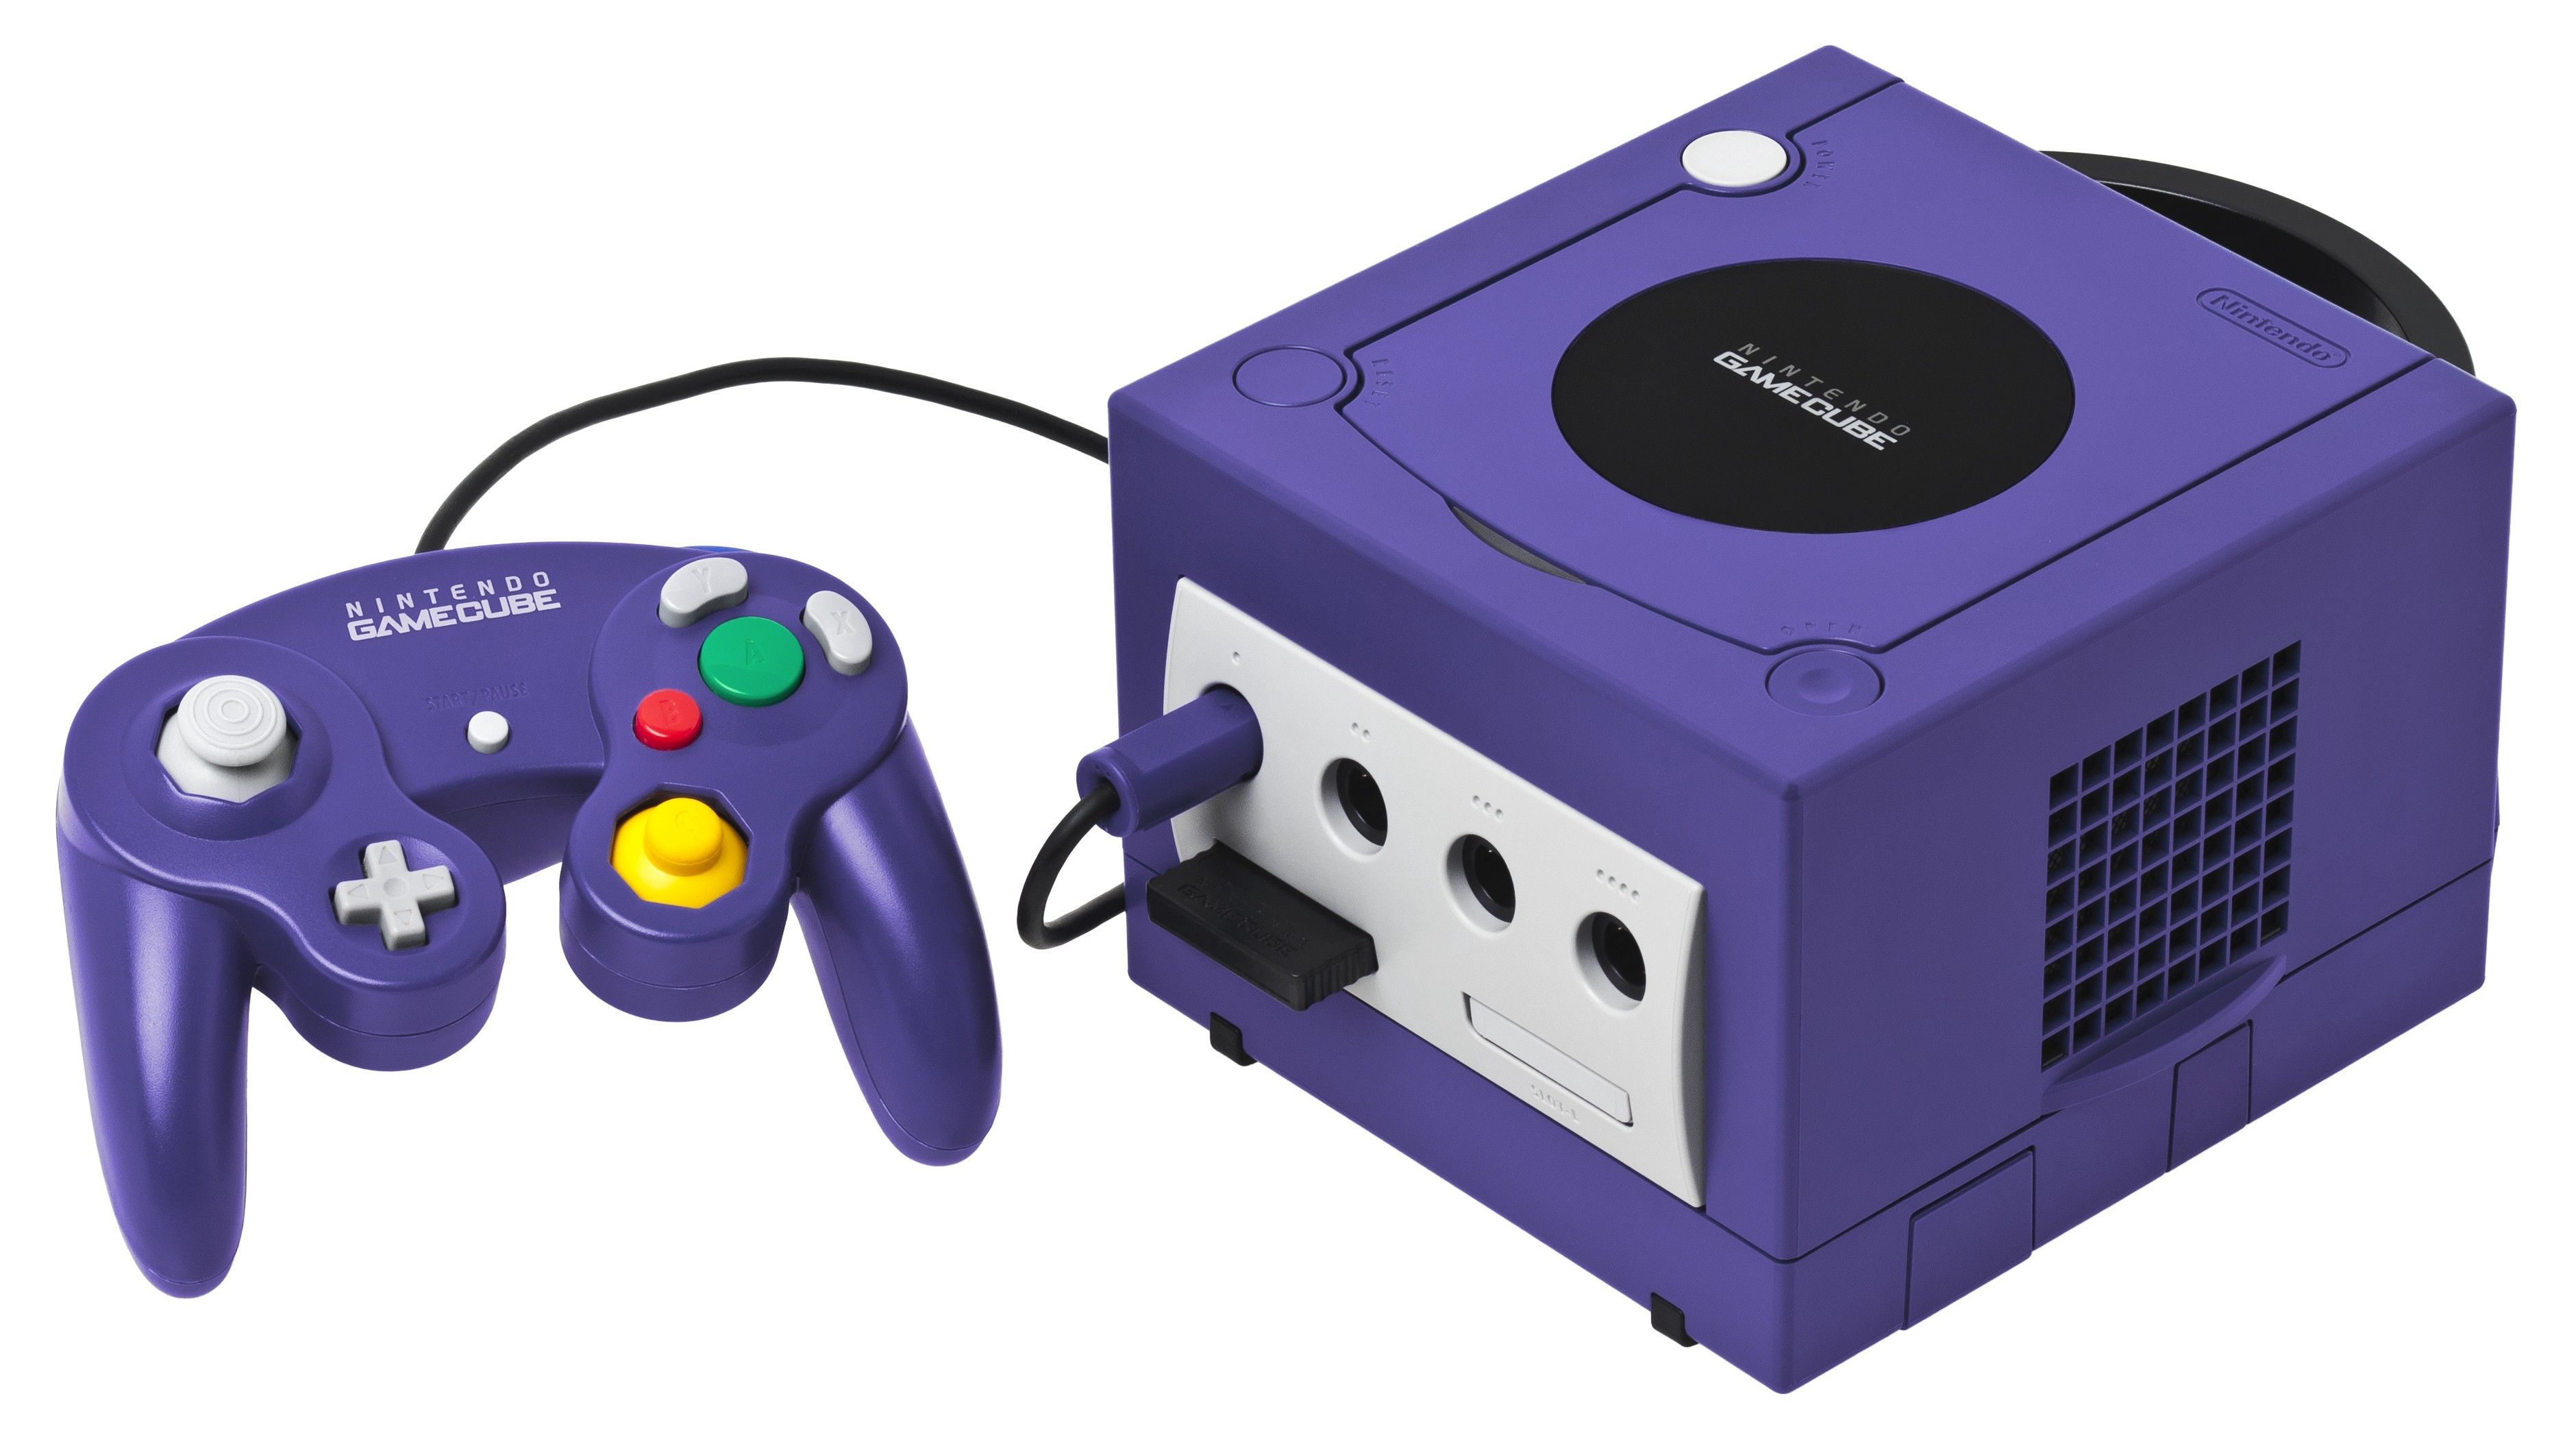   Изначально игра вышла на приставке GameCube